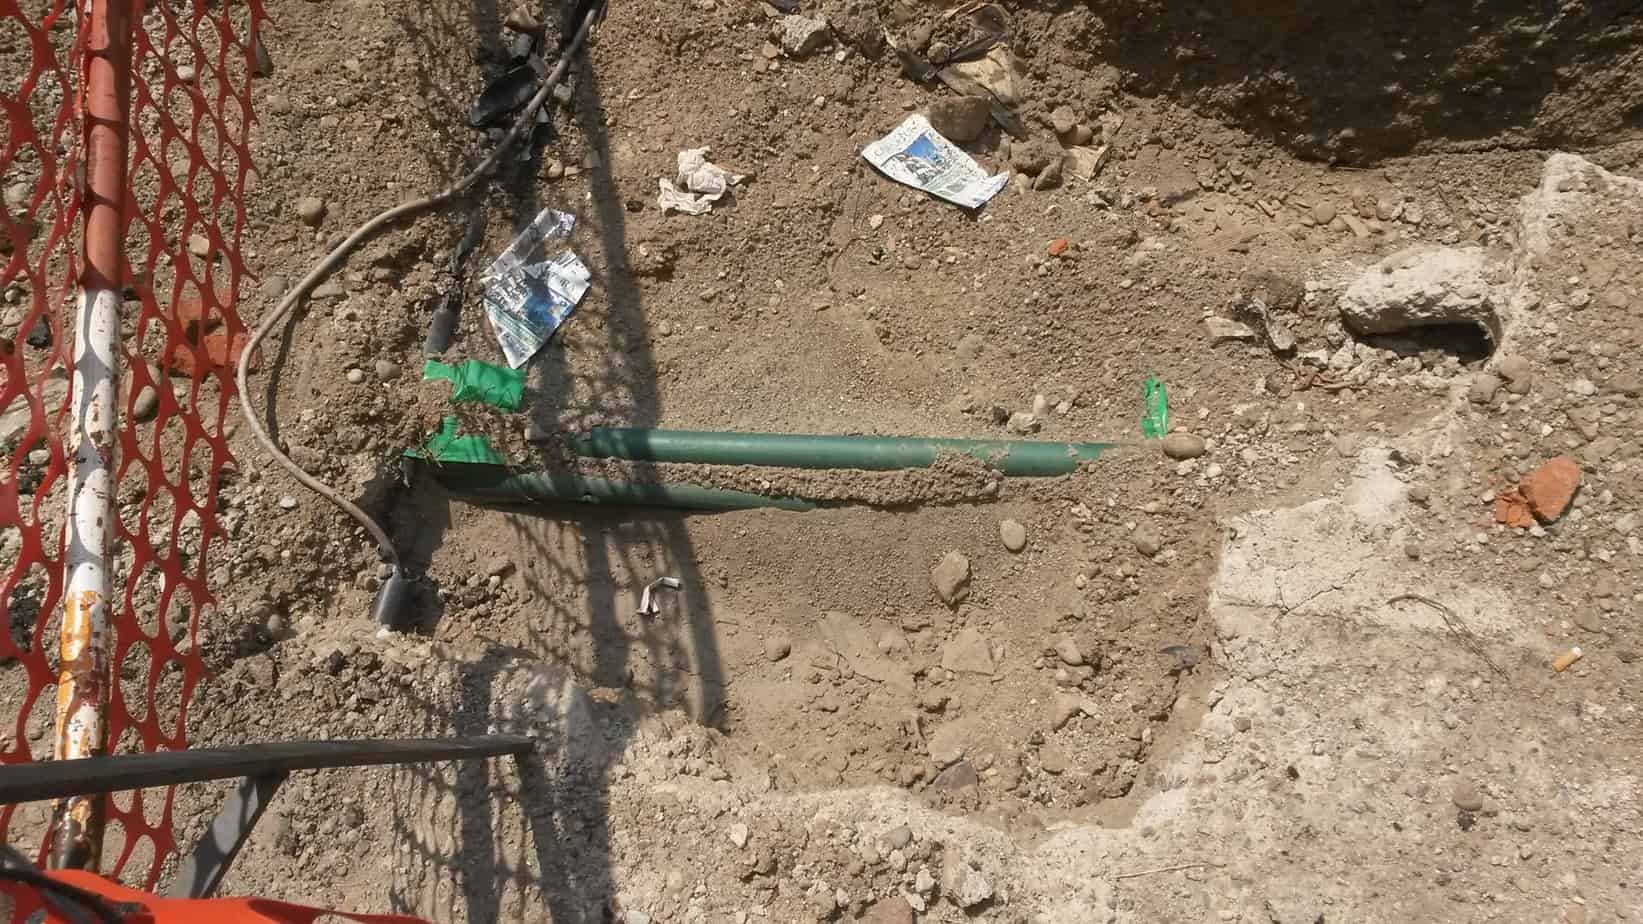 Gli scavi hanno portato alla luce due tipologie di infrastrutture disposte perpendicolarmente l’una rispetto all’altra: il cavo bianco e il tubo verde